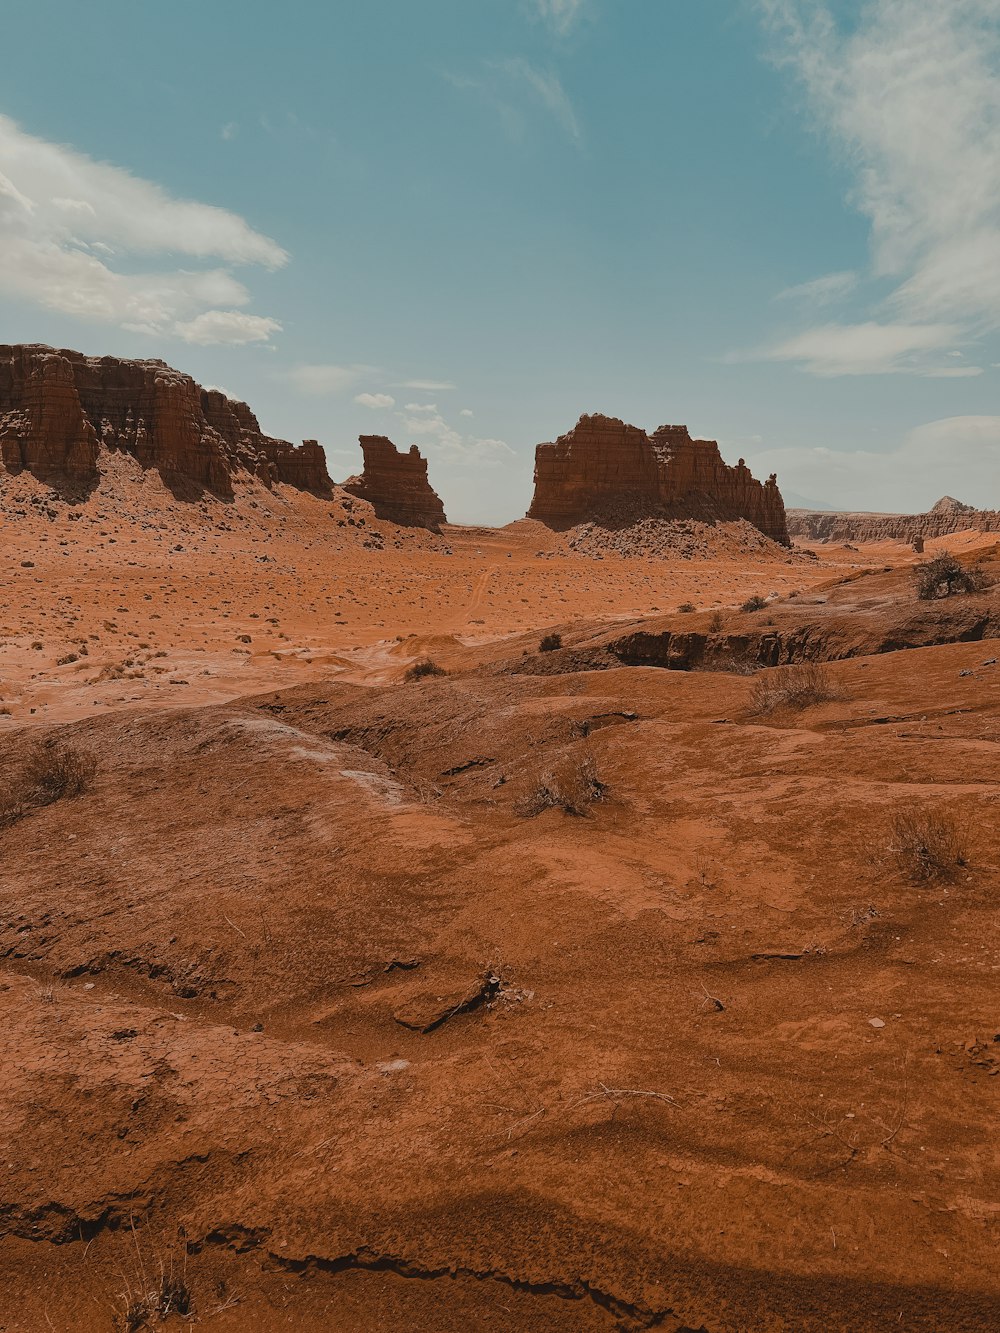 a desert landscape with a few tall rocks